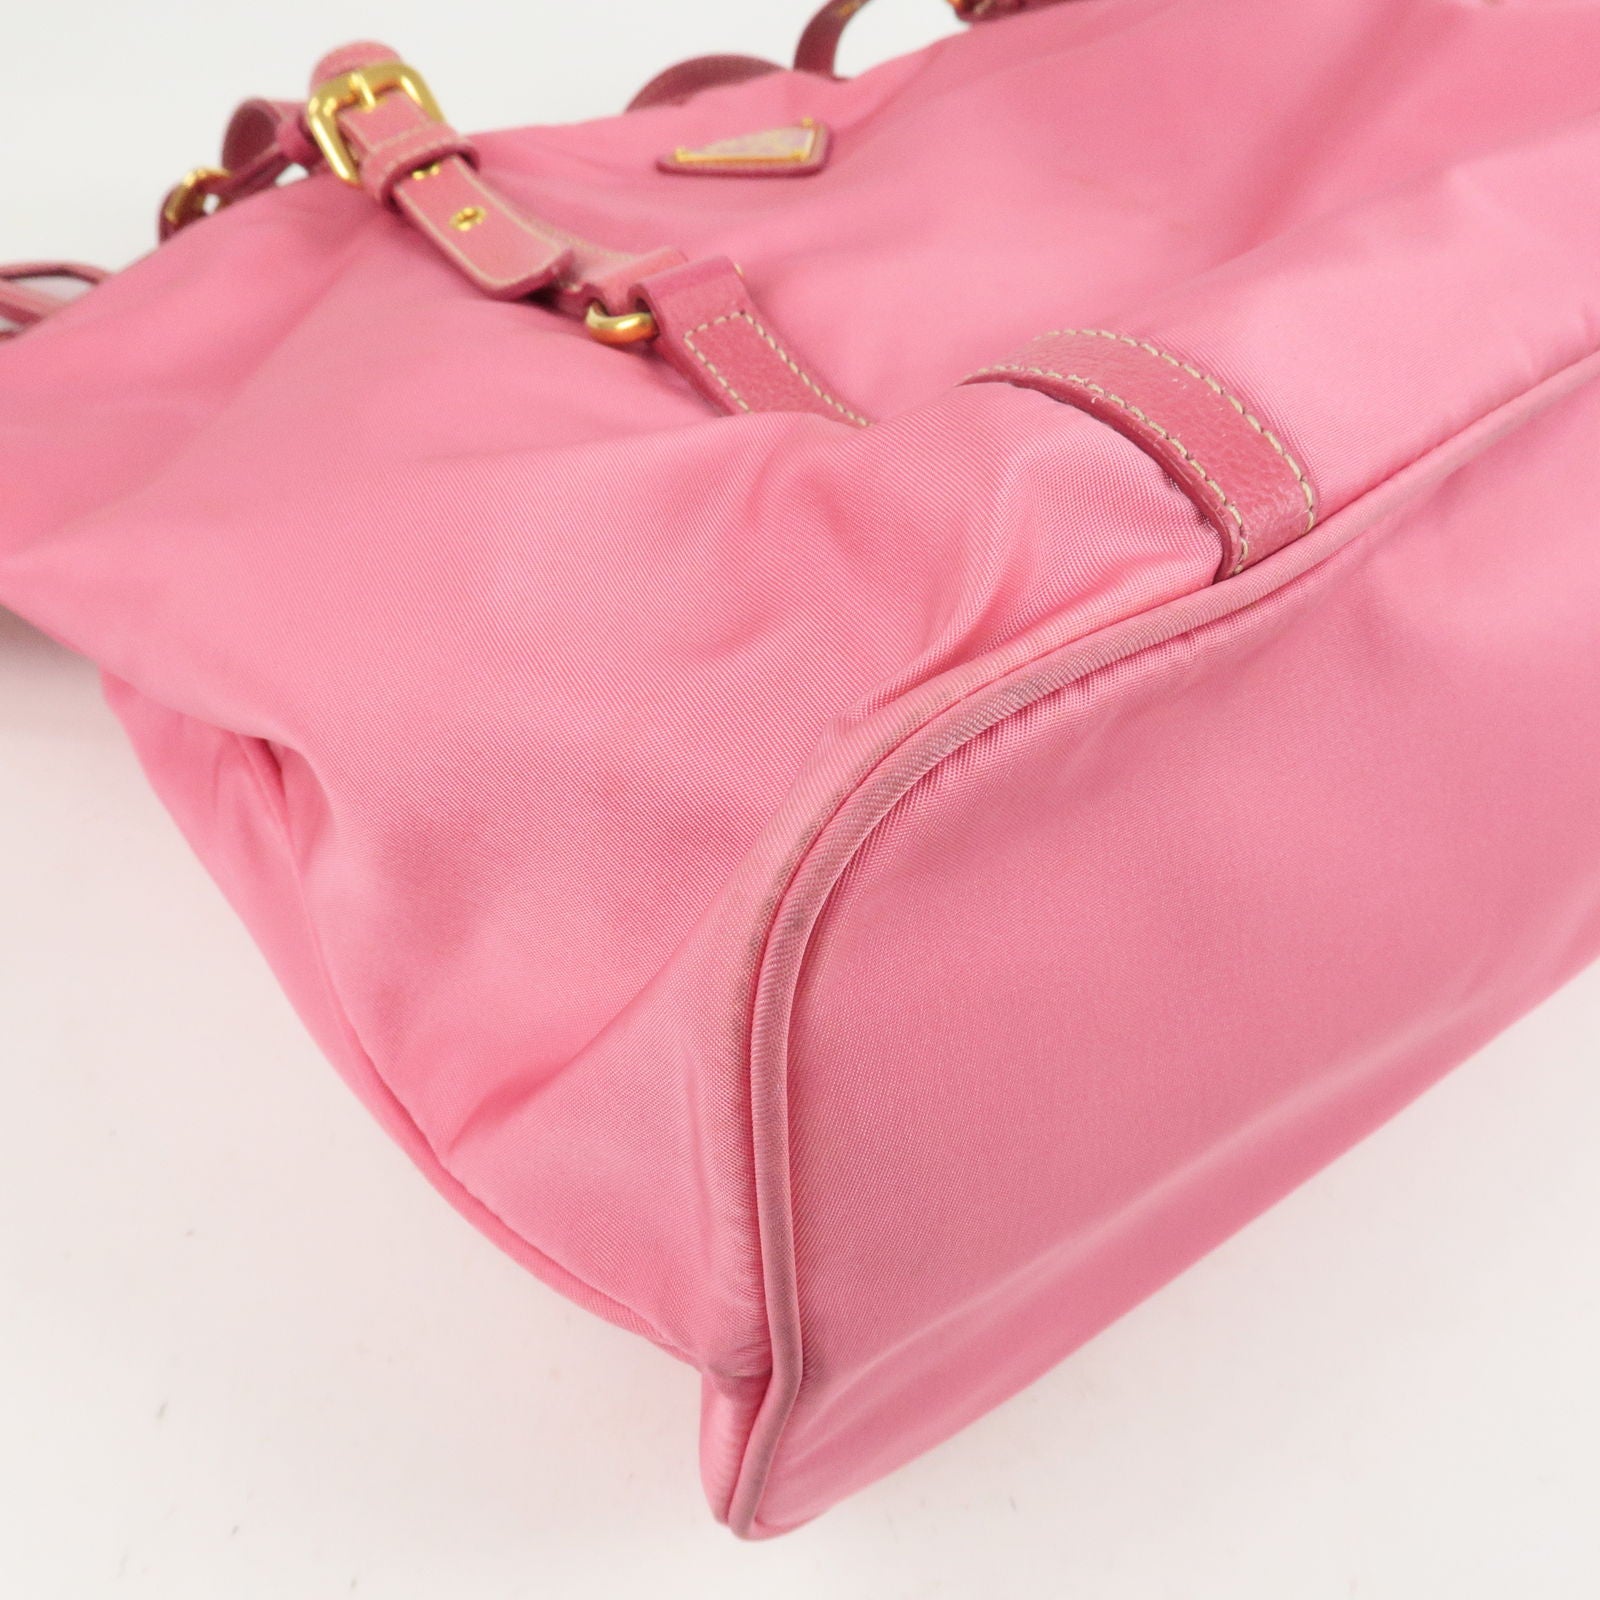 PRADA-Logo-Nylon-Leather-Shoulder-Bag-Hand-Bag-Pink-BR4894 – dct